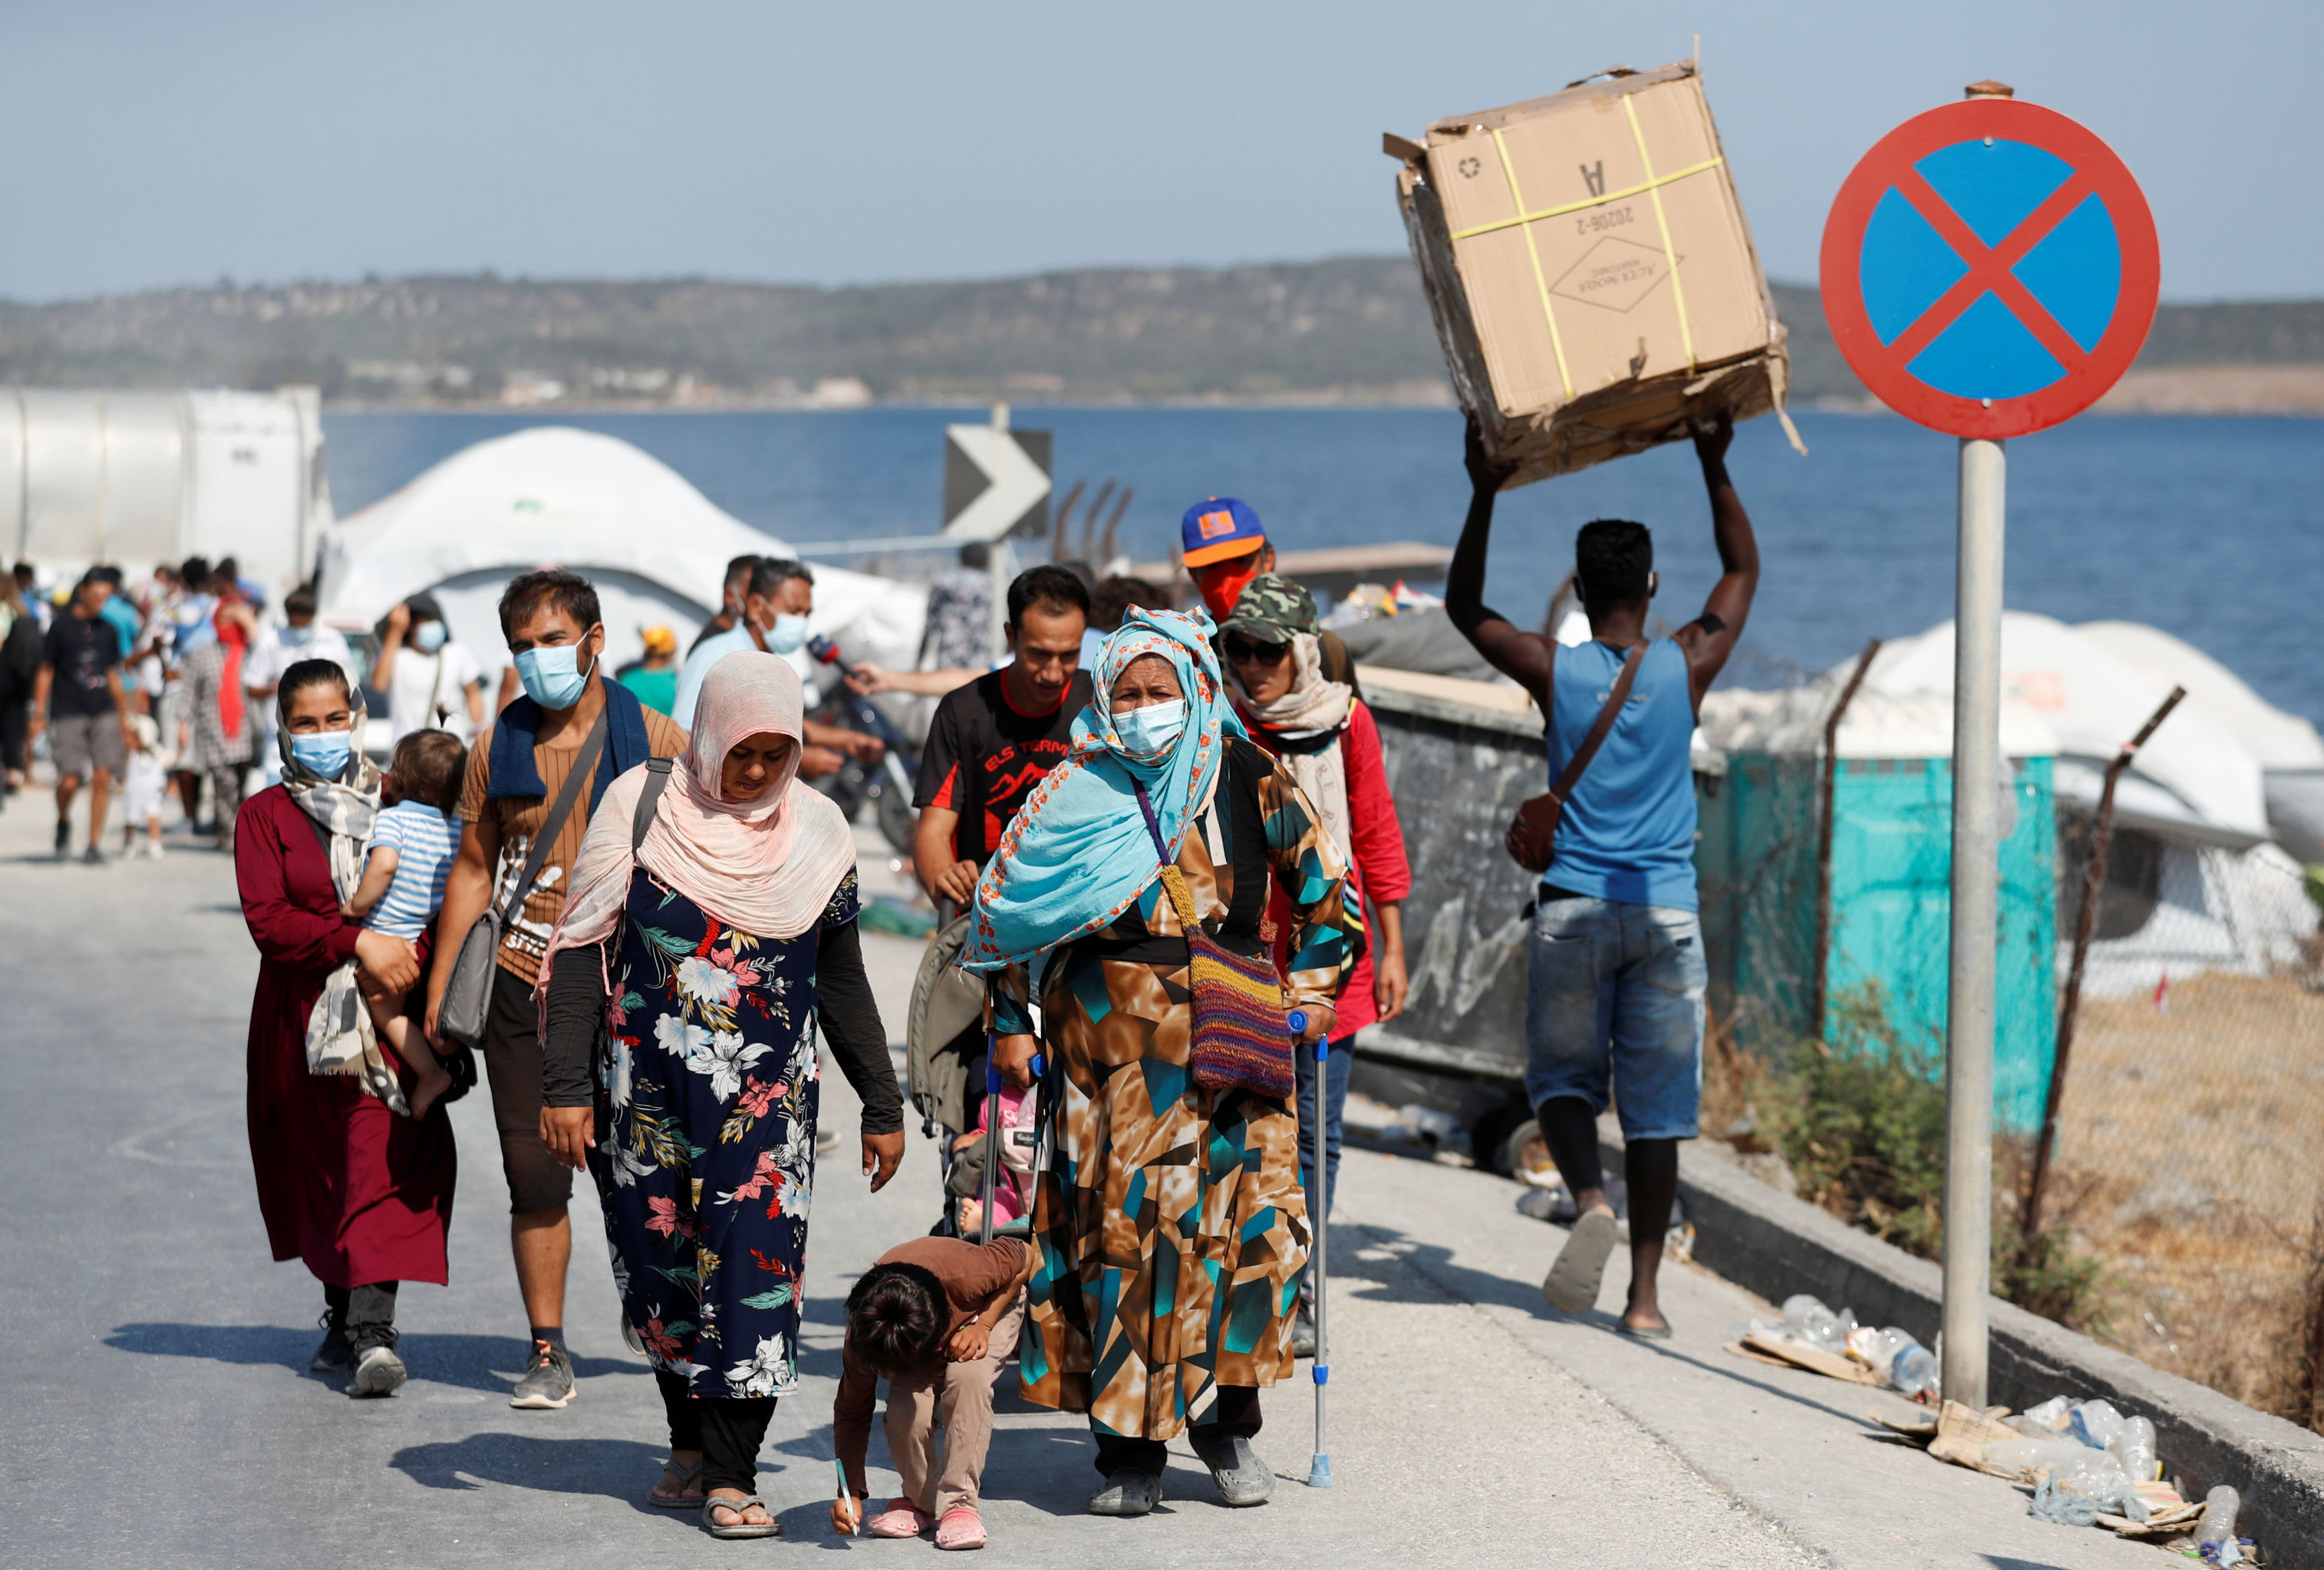 Мигранты на острове Лесбос